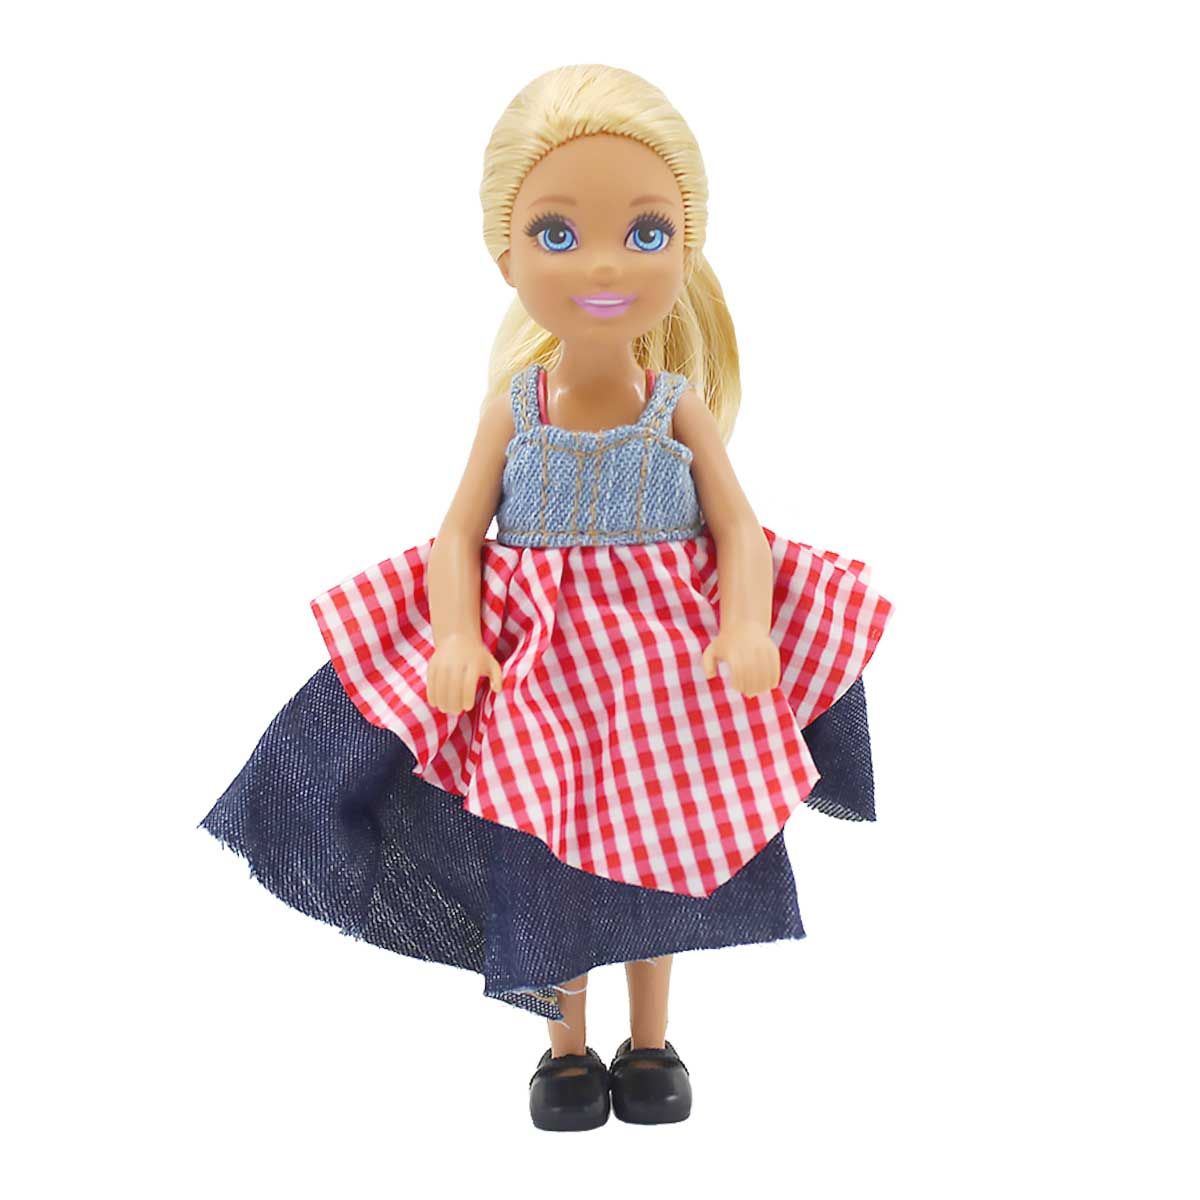 Одежда Dolls Accessories для маленьких кукол ростом 12-16 см Хэппи